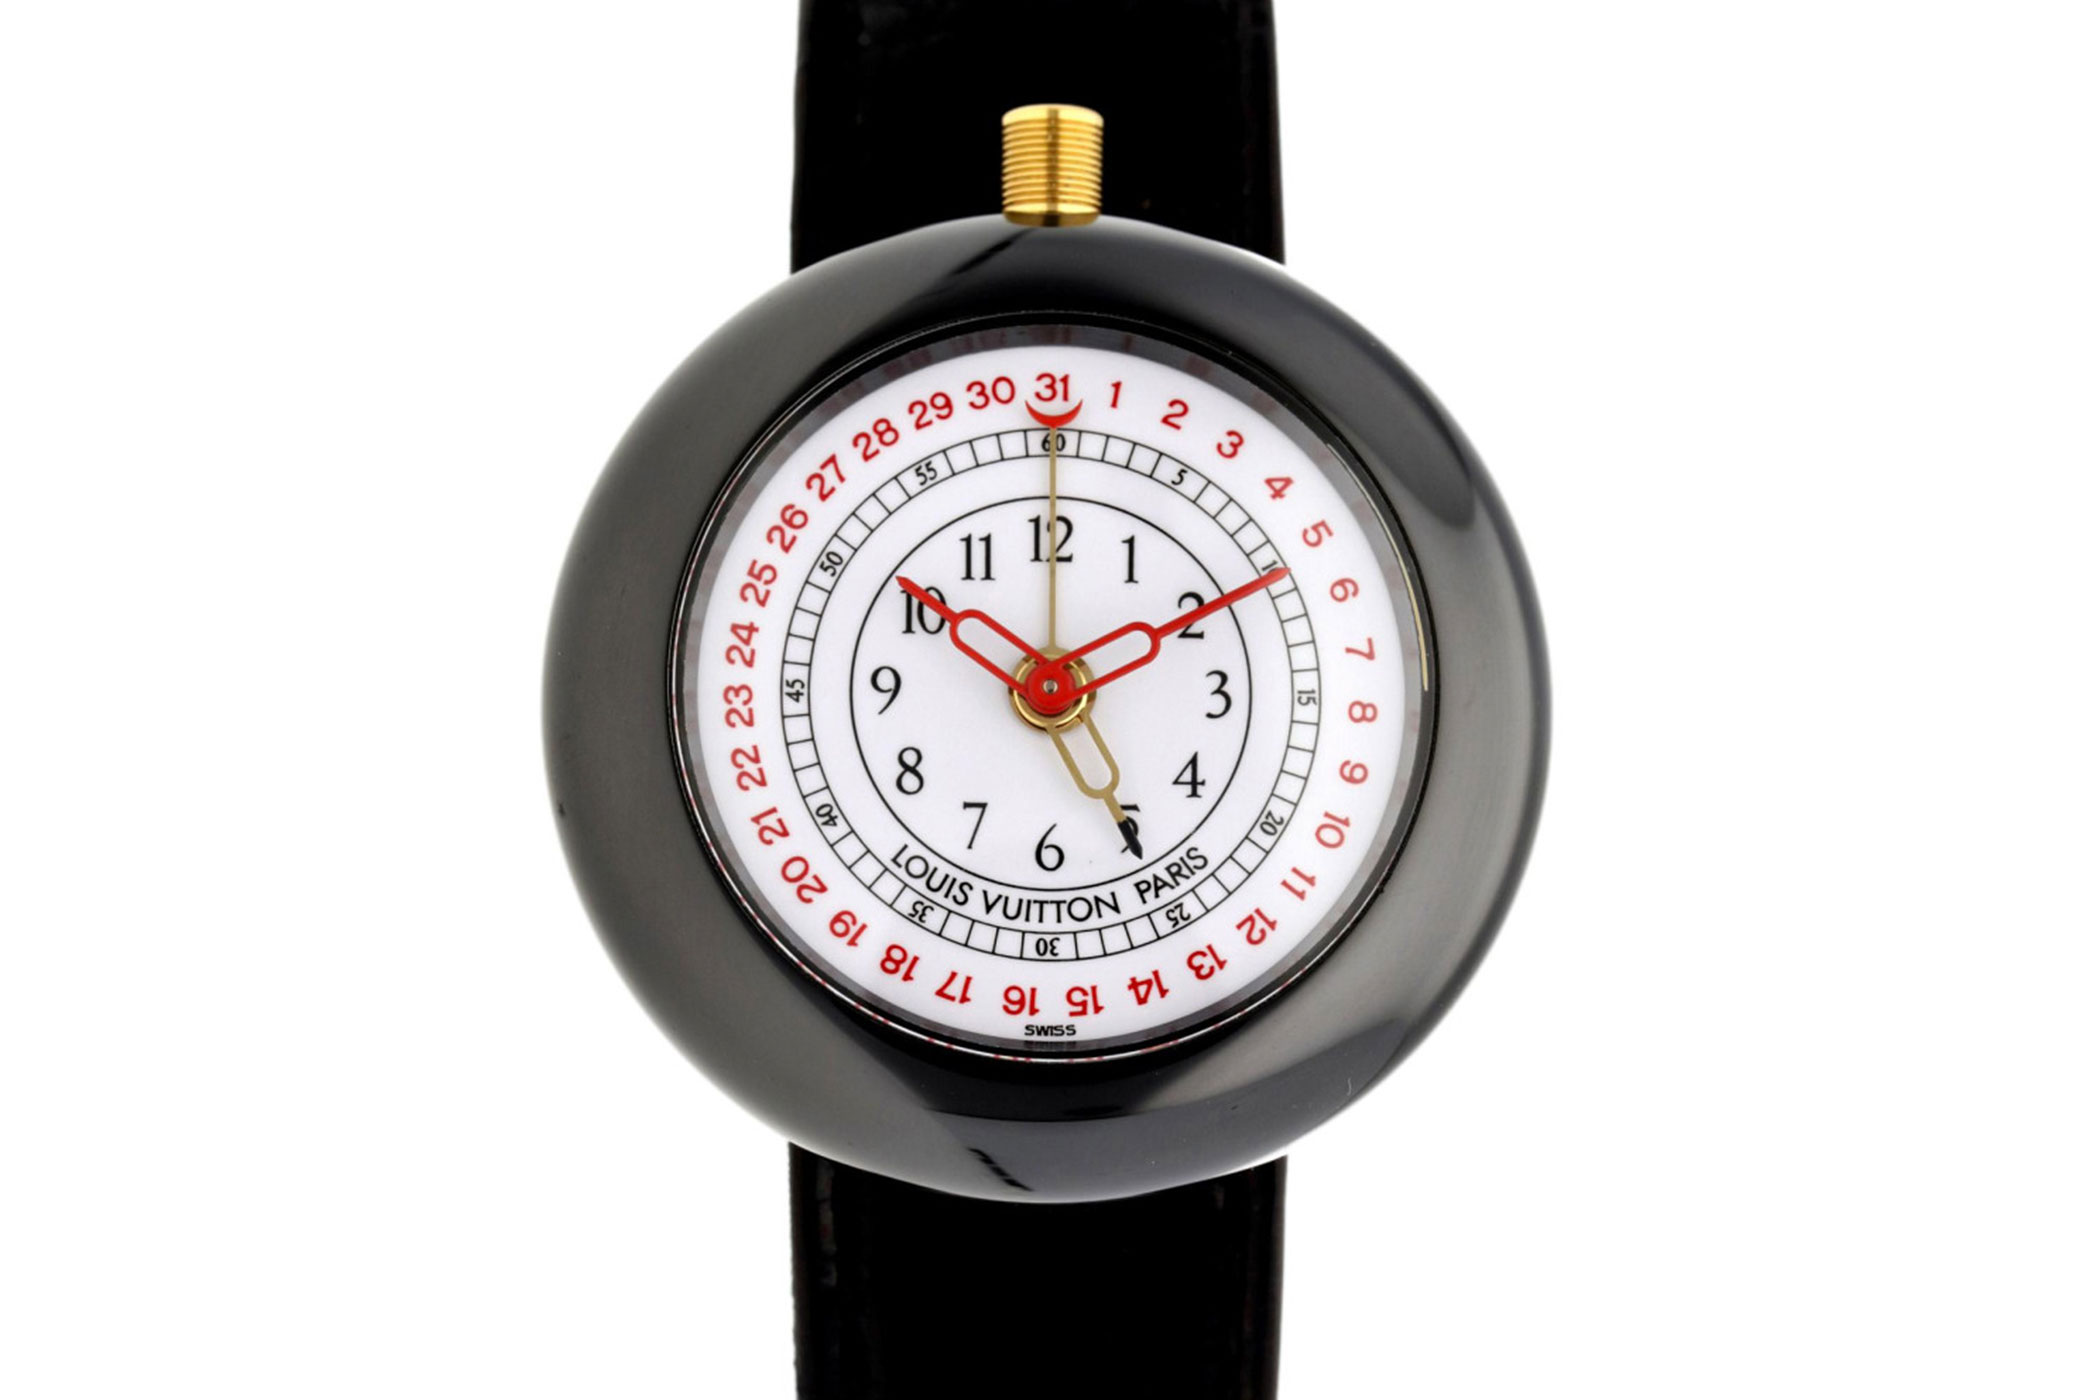 Louis Vuitton: Neue Uhr mit hypnotischer Ausstrahlung - séduction